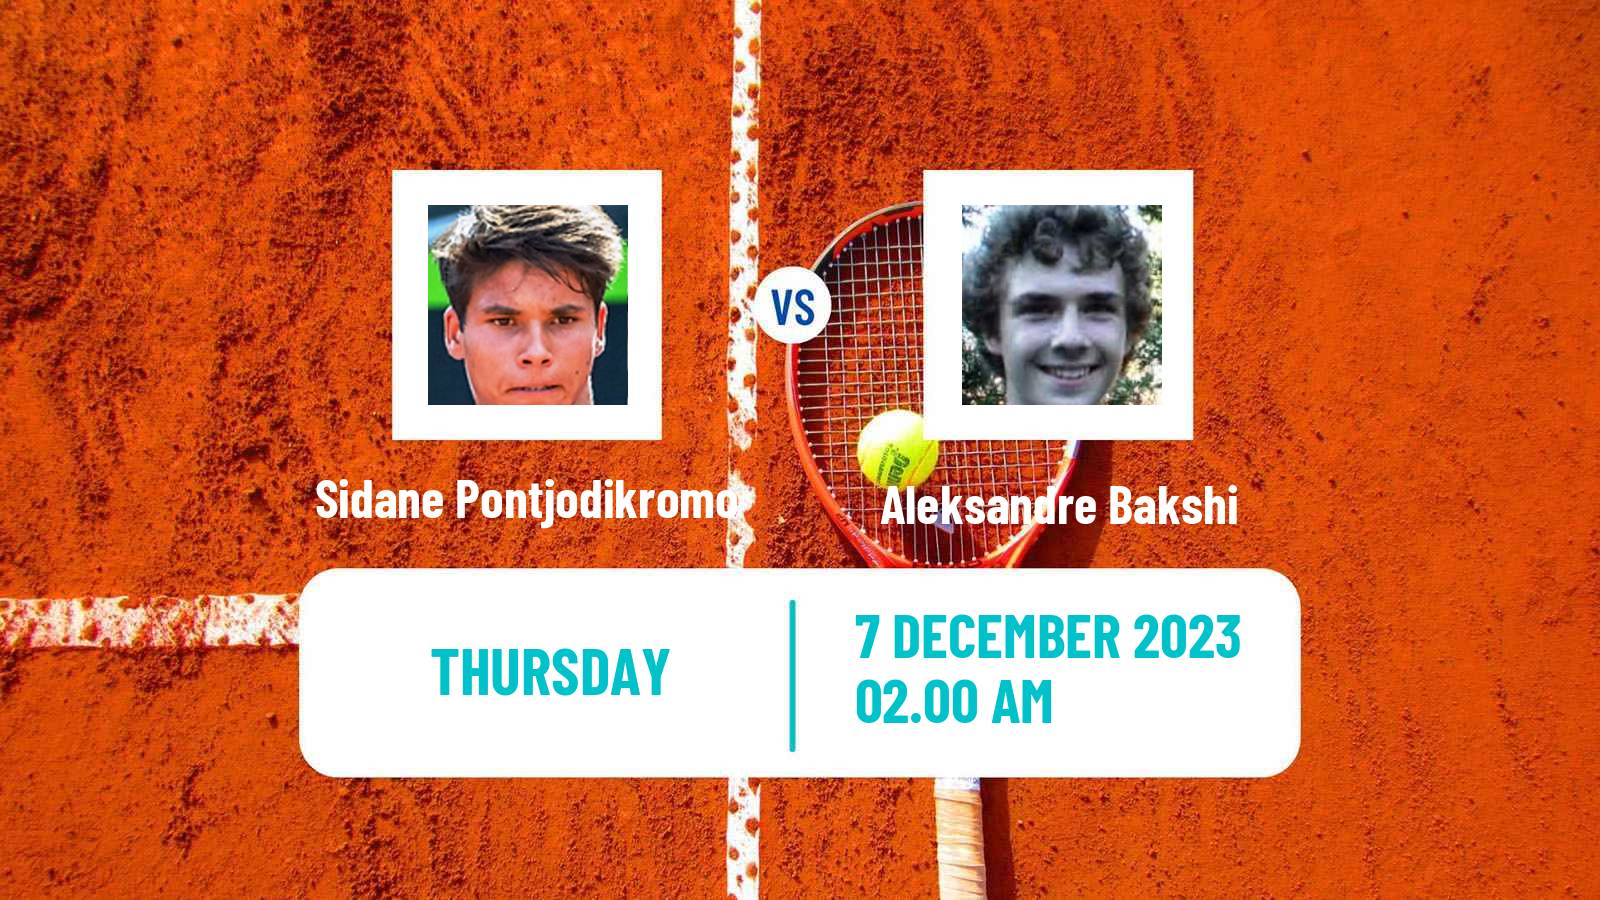 Tennis ITF M15 Zahra 2 Men Sidane Pontjodikromo - Aleksandre Bakshi